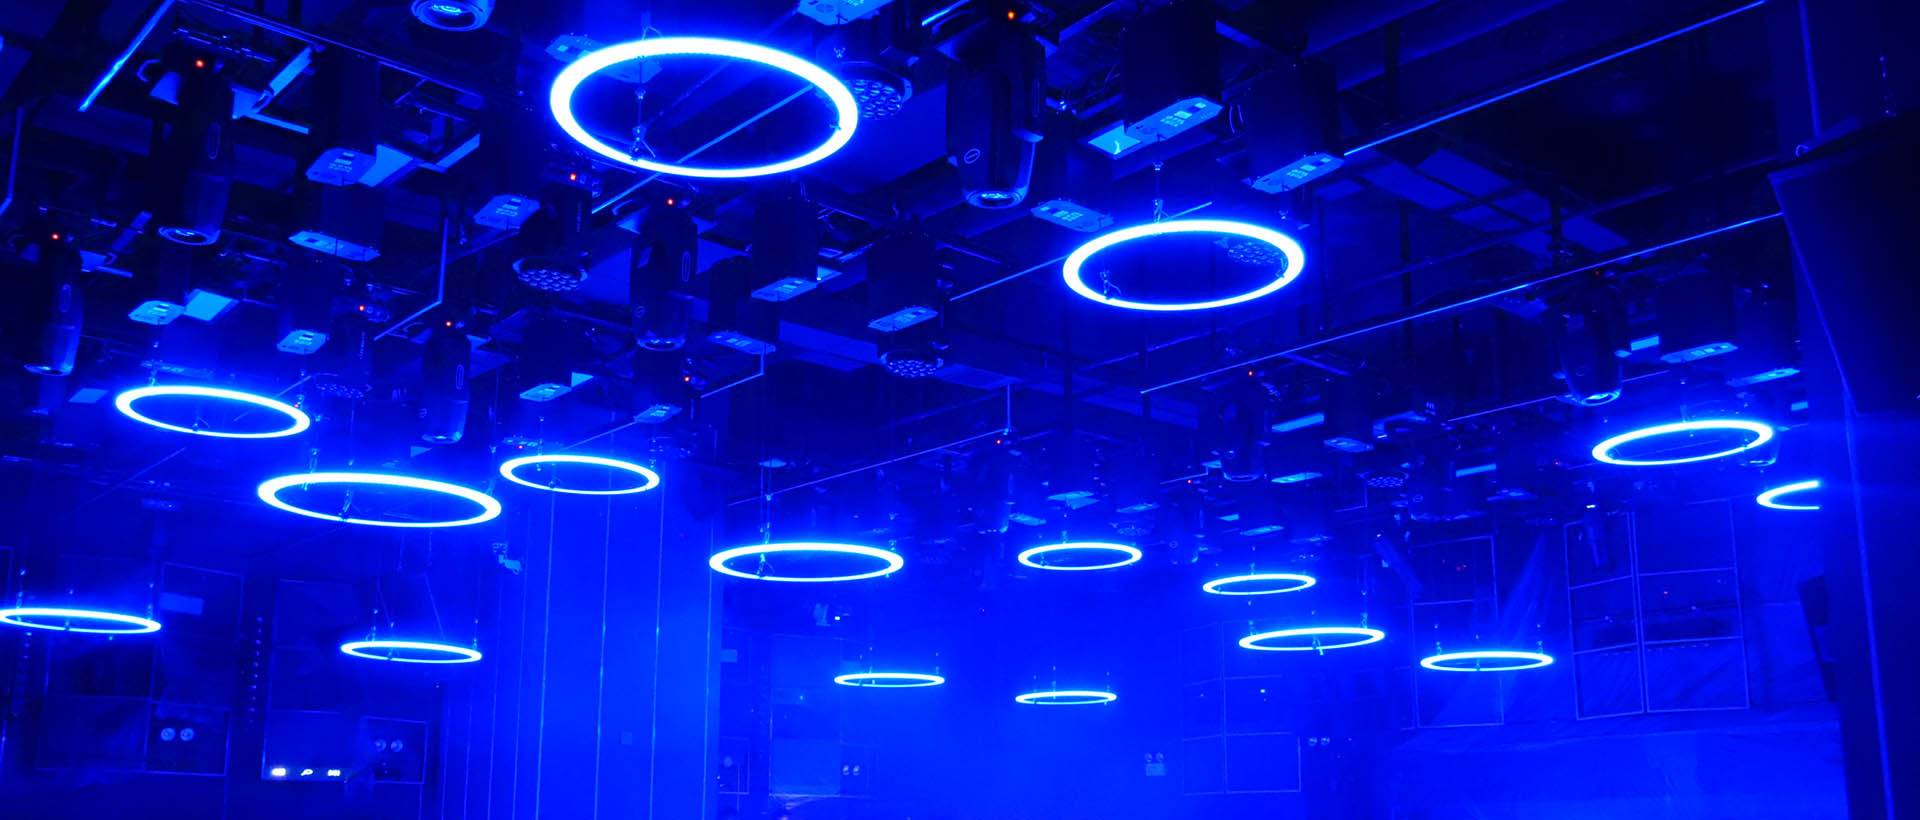 2020 Kinetic LED Ring para sa proyekto ng club lounge bar (2)